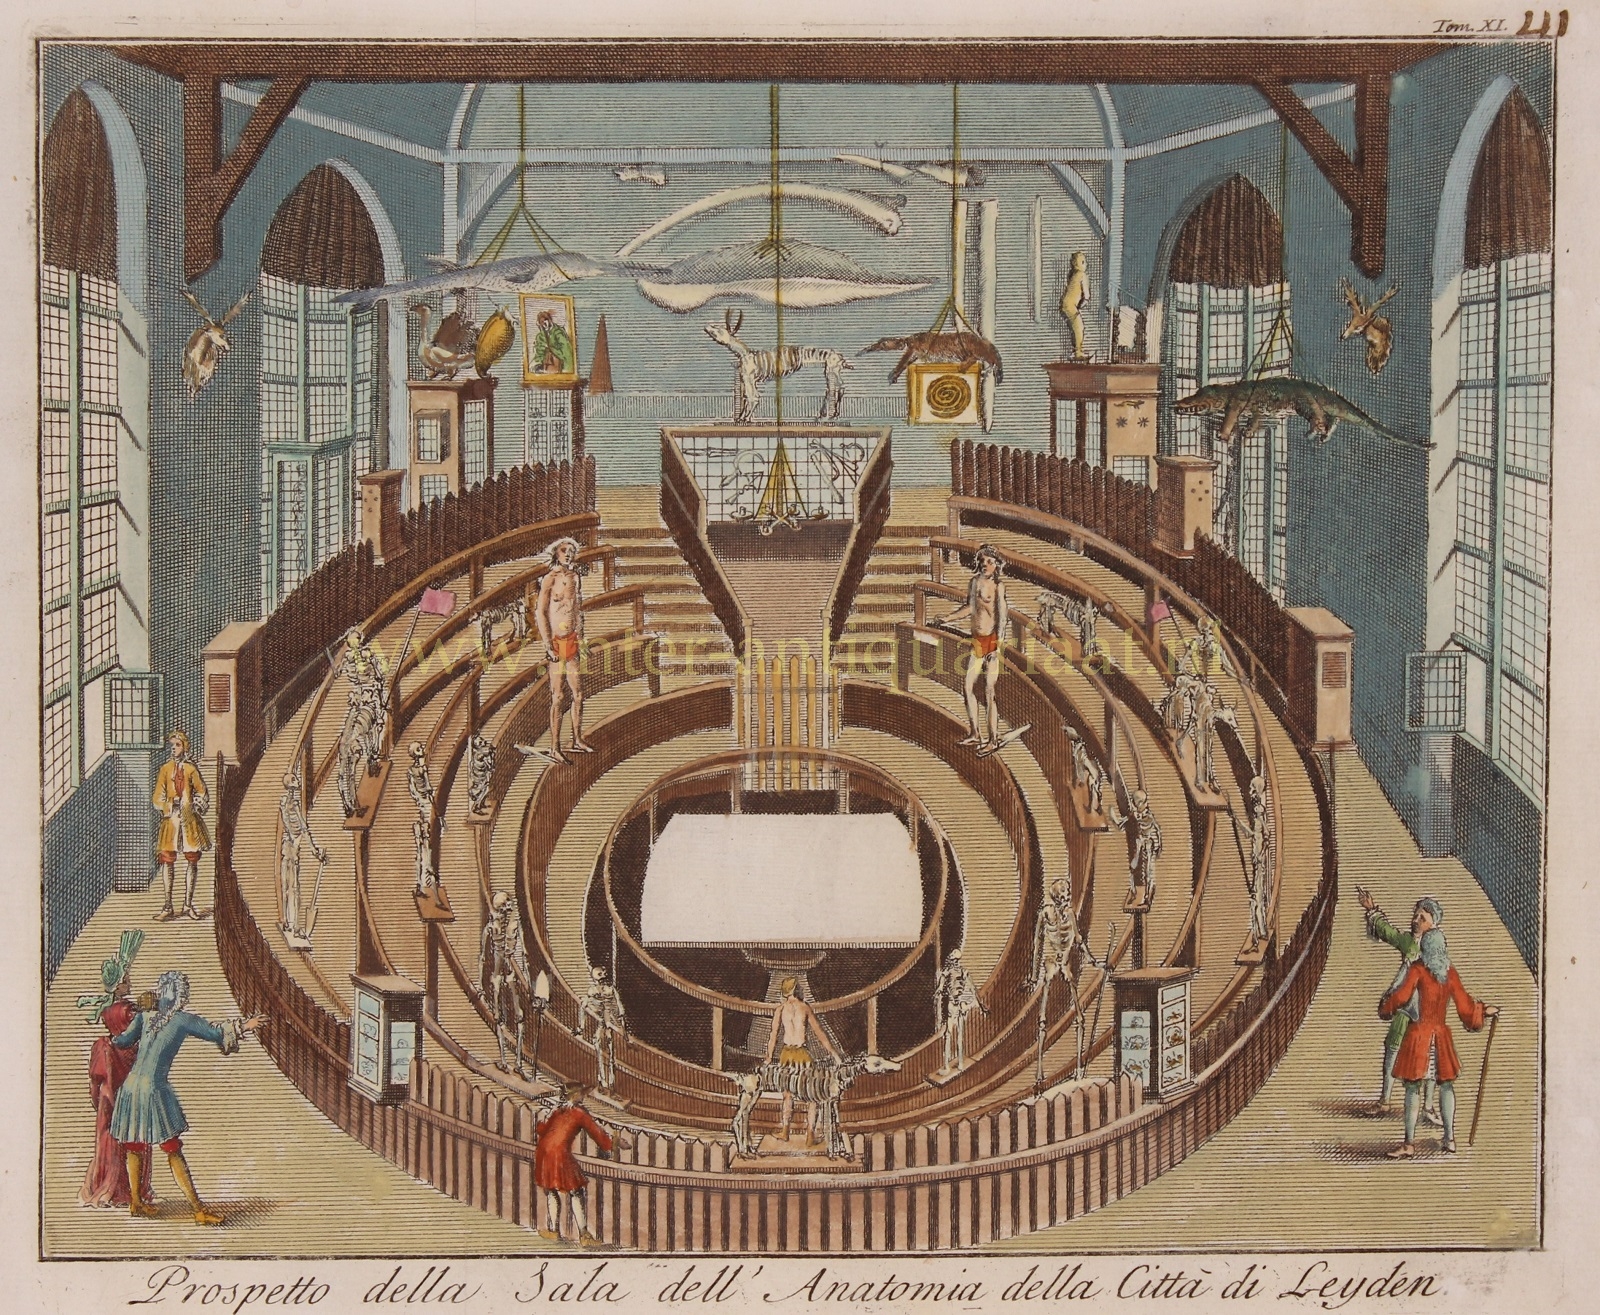  - Leiden anatomical theatre - Thomas Salmn + Gianbattista Albrizzi, 1742